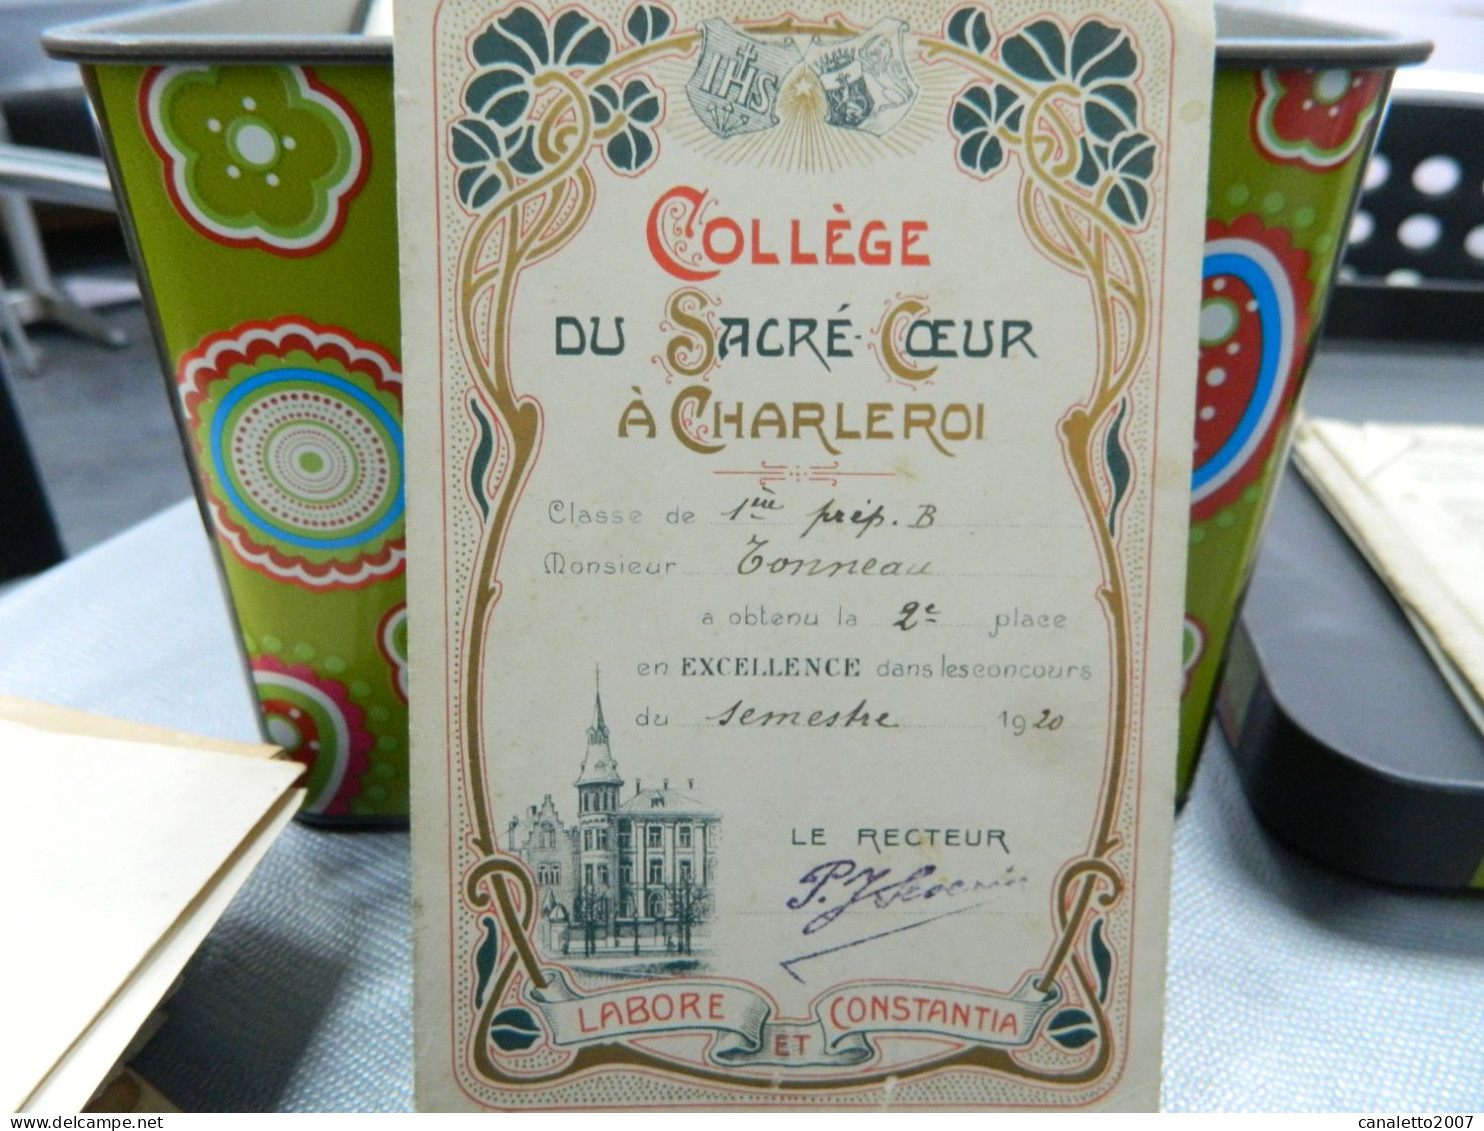 CHARLEROI: COLLEGE DU SACRE COEUR A CHARLEROI CARTE D'EXCELLENCE  DE M.TONNEAU EN 1920-DECOR ART NOUVEAU - Diploma's En Schoolrapporten